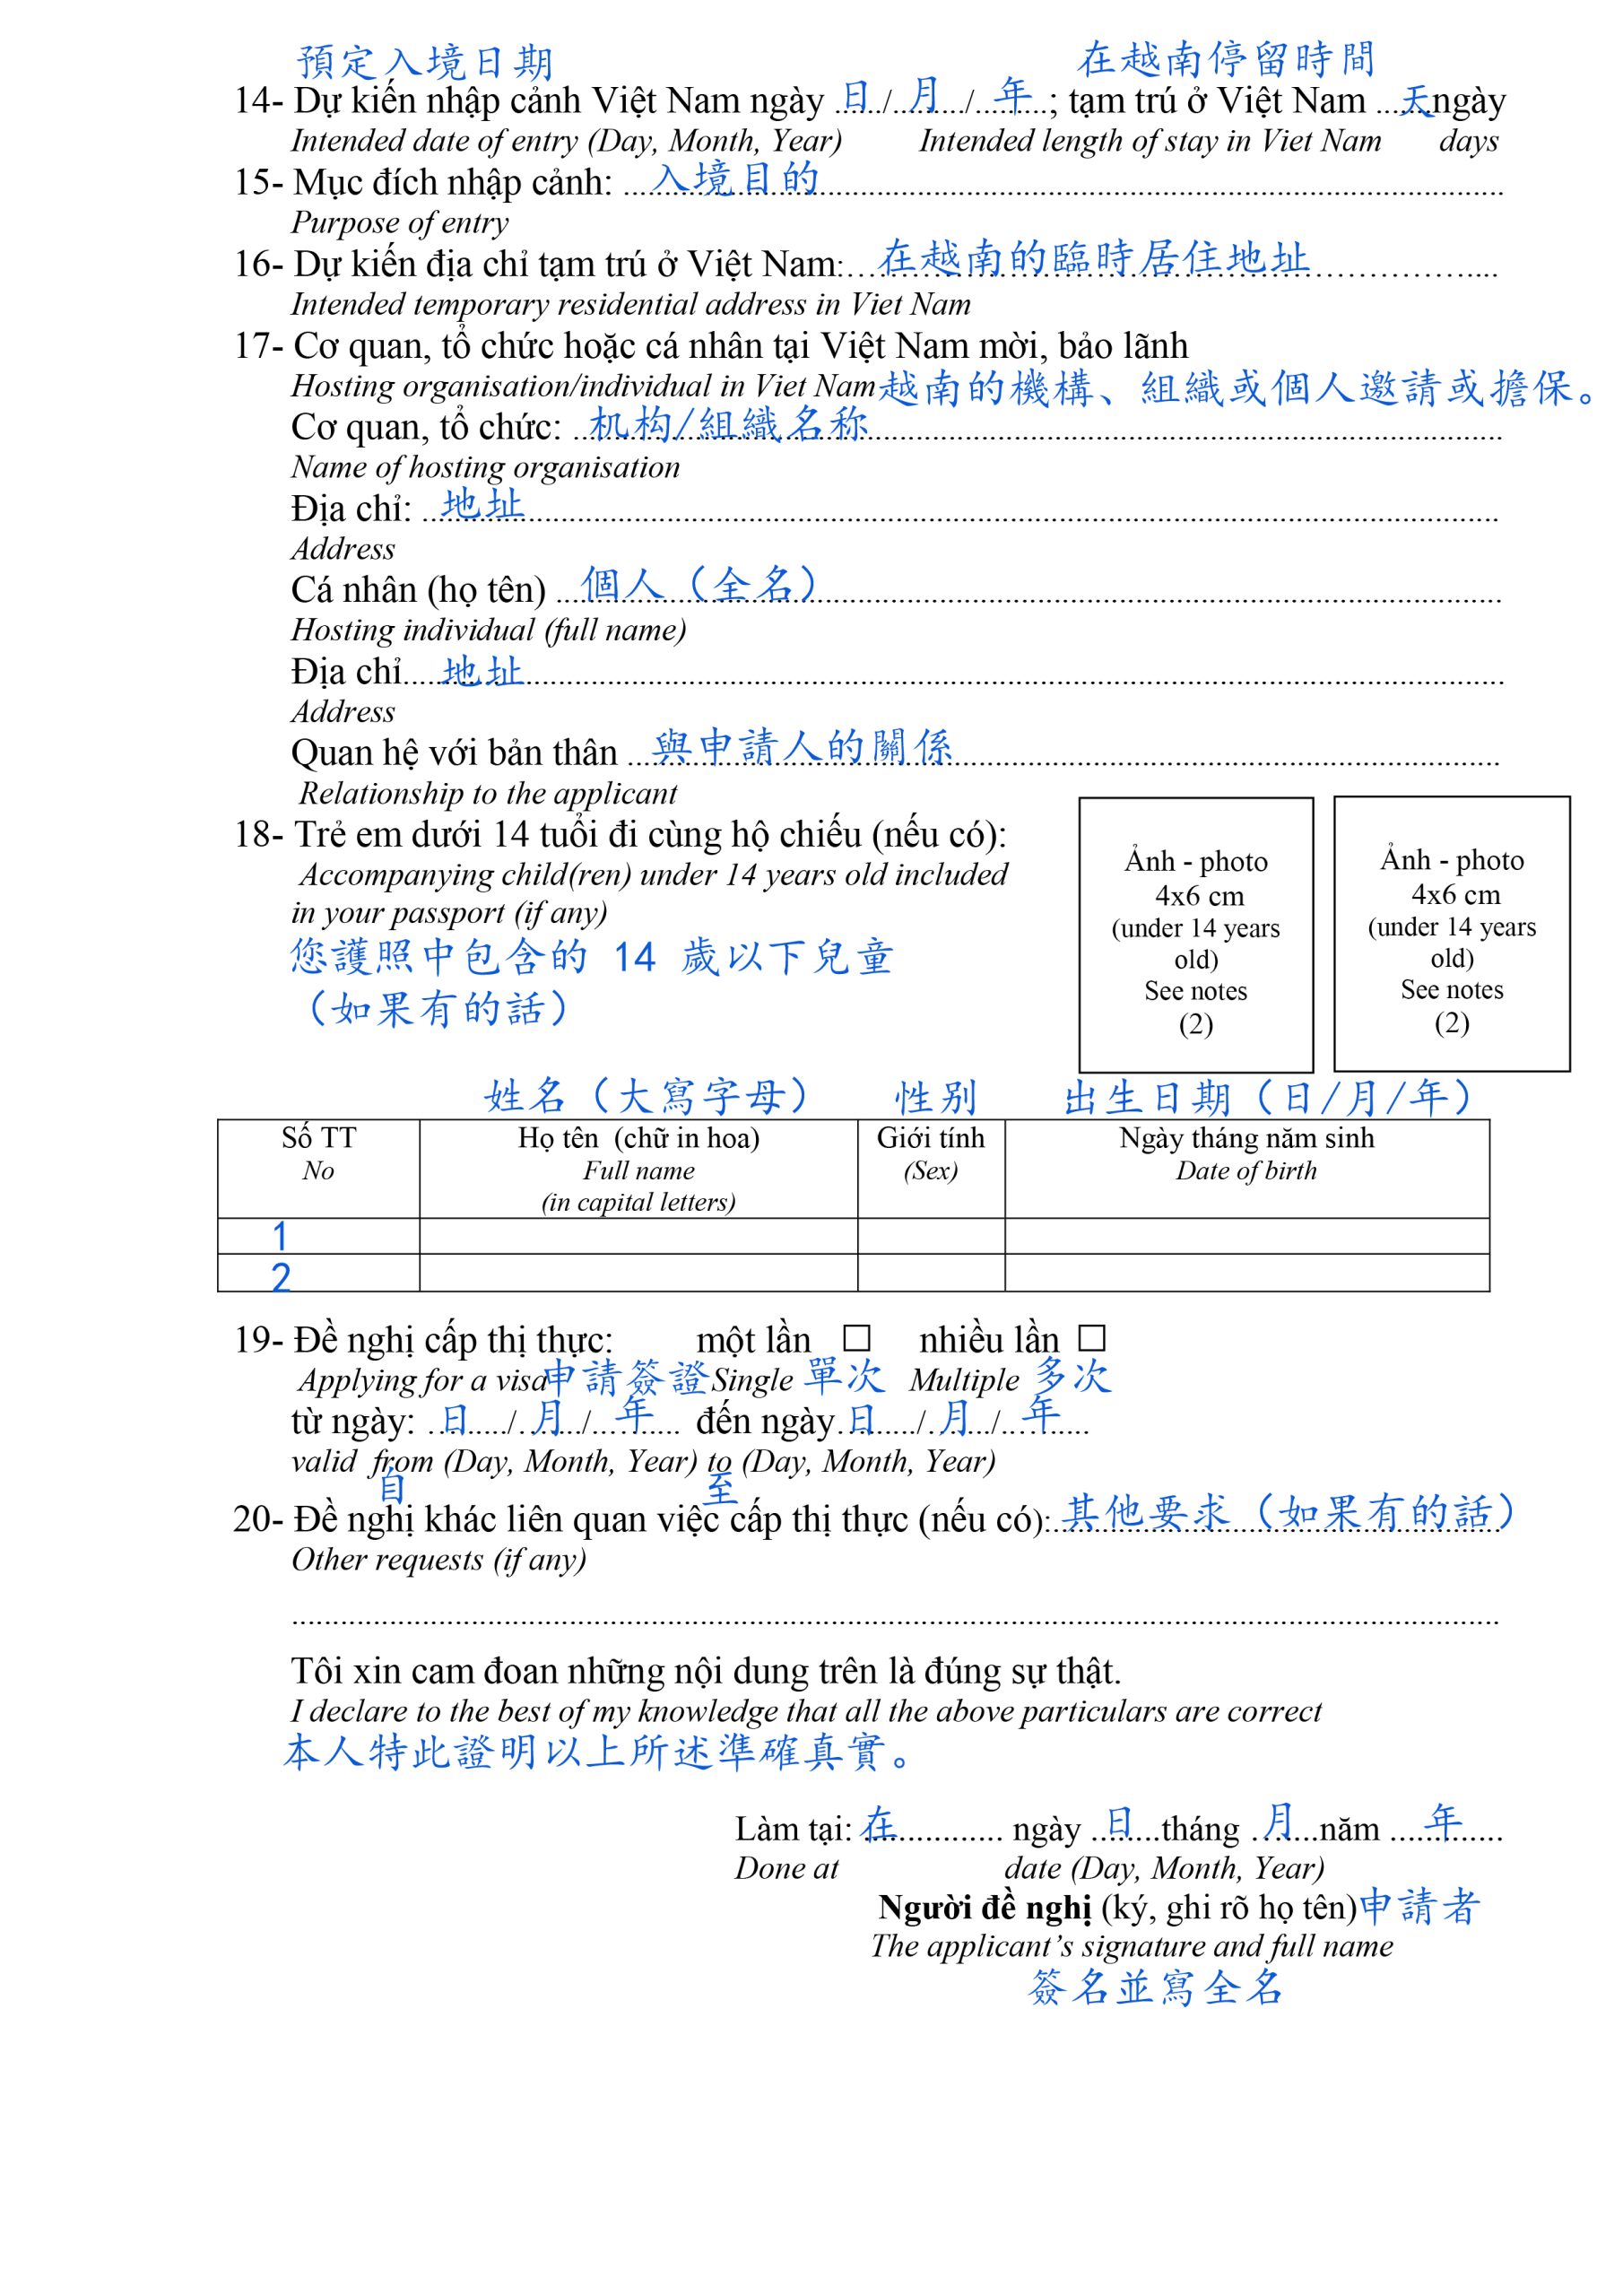 表格NA1 – 越南簽證申請表